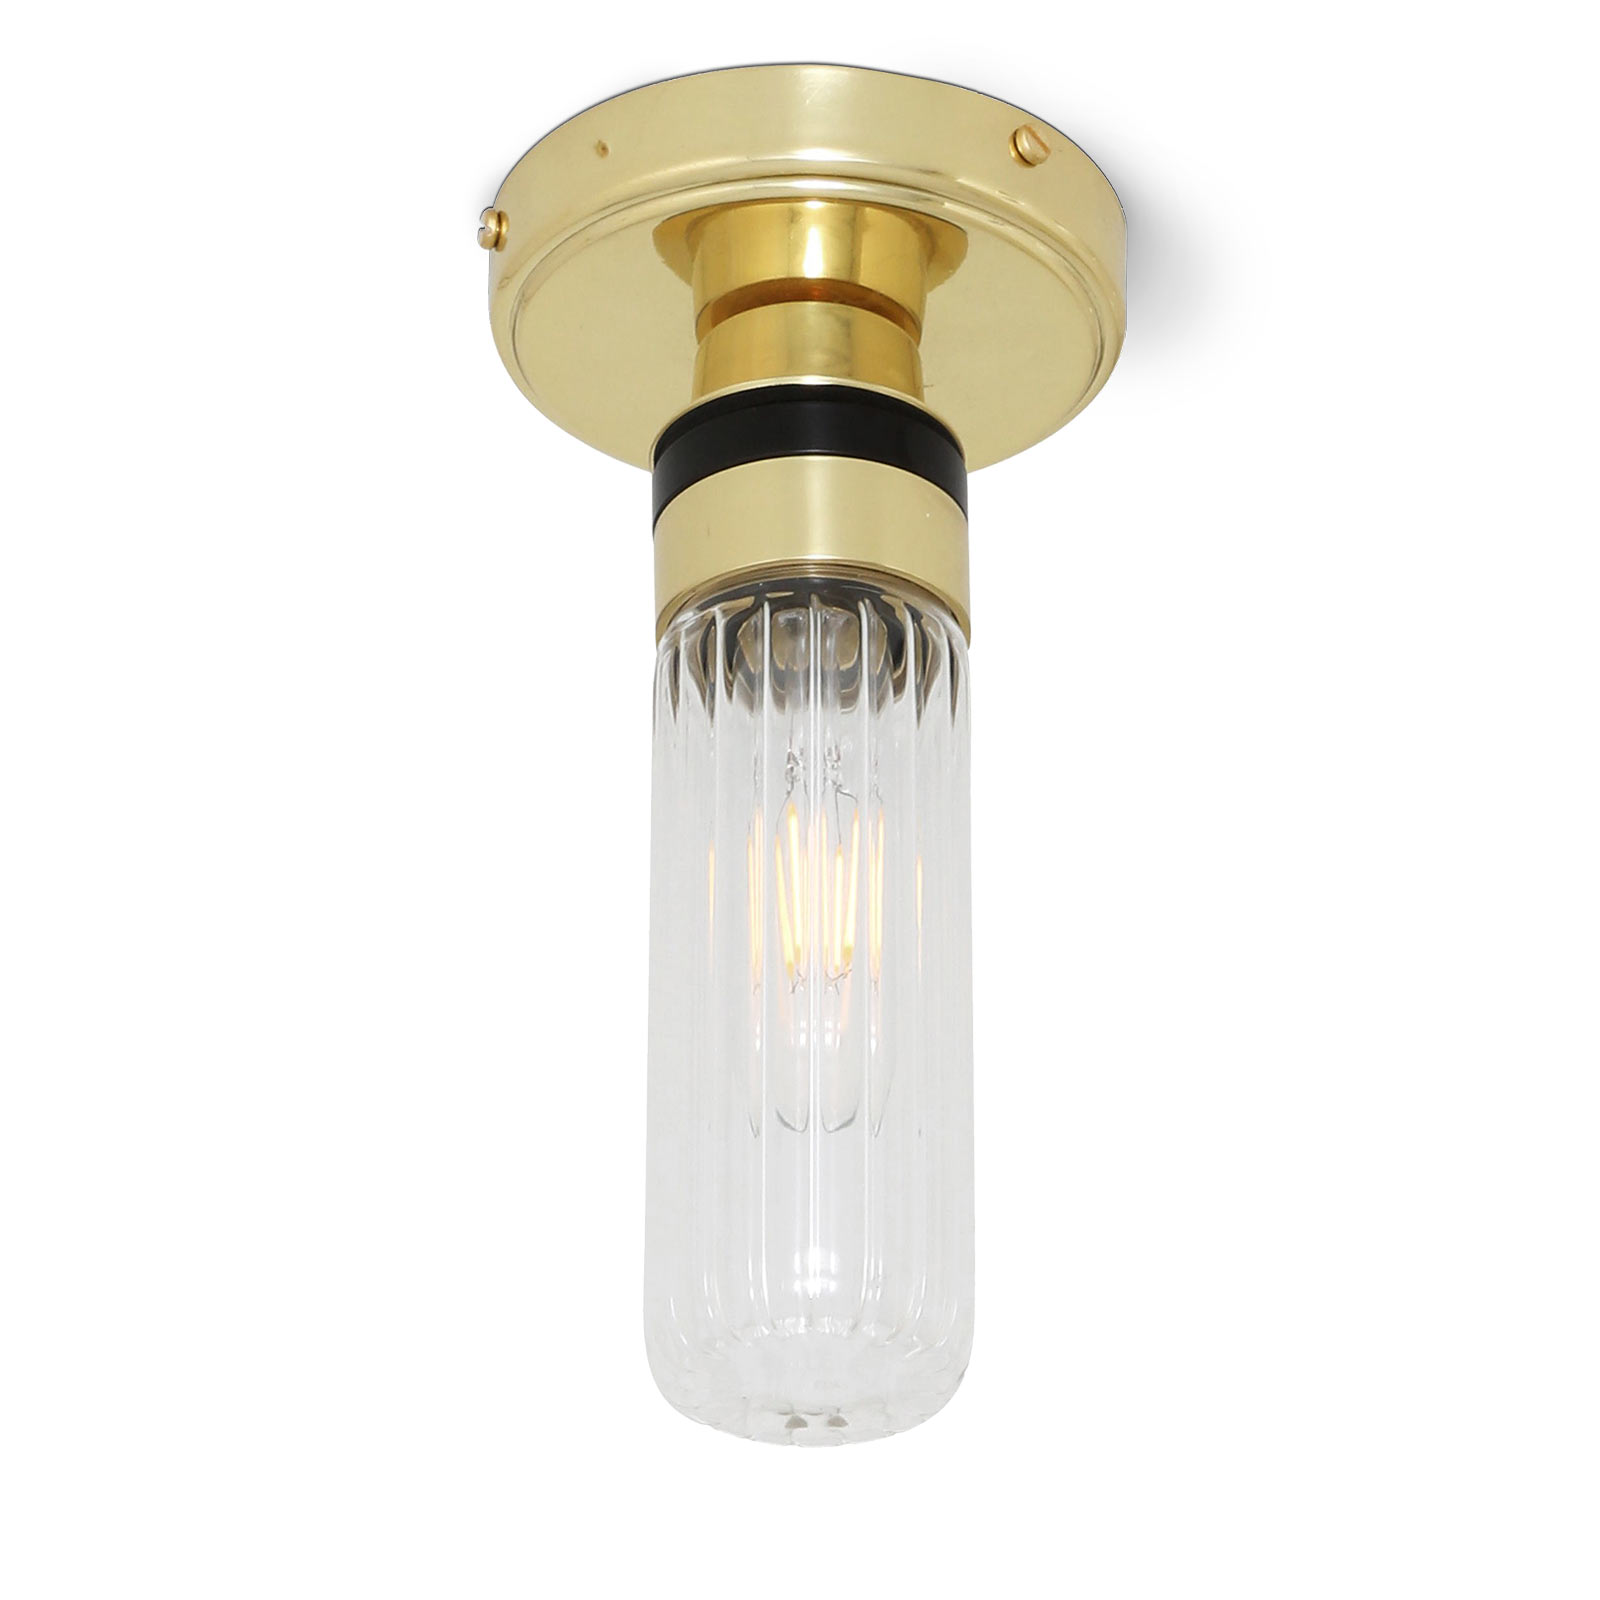 Bad-Deckenlampe mit kleinem Glas-Zylinder (klar oder prismatisch), IP65: Kleine Badezimmer-Deckenlampe mit Glas-Zylinder, hier: Messing poliert, „prismatisch“ gerilltes Glas